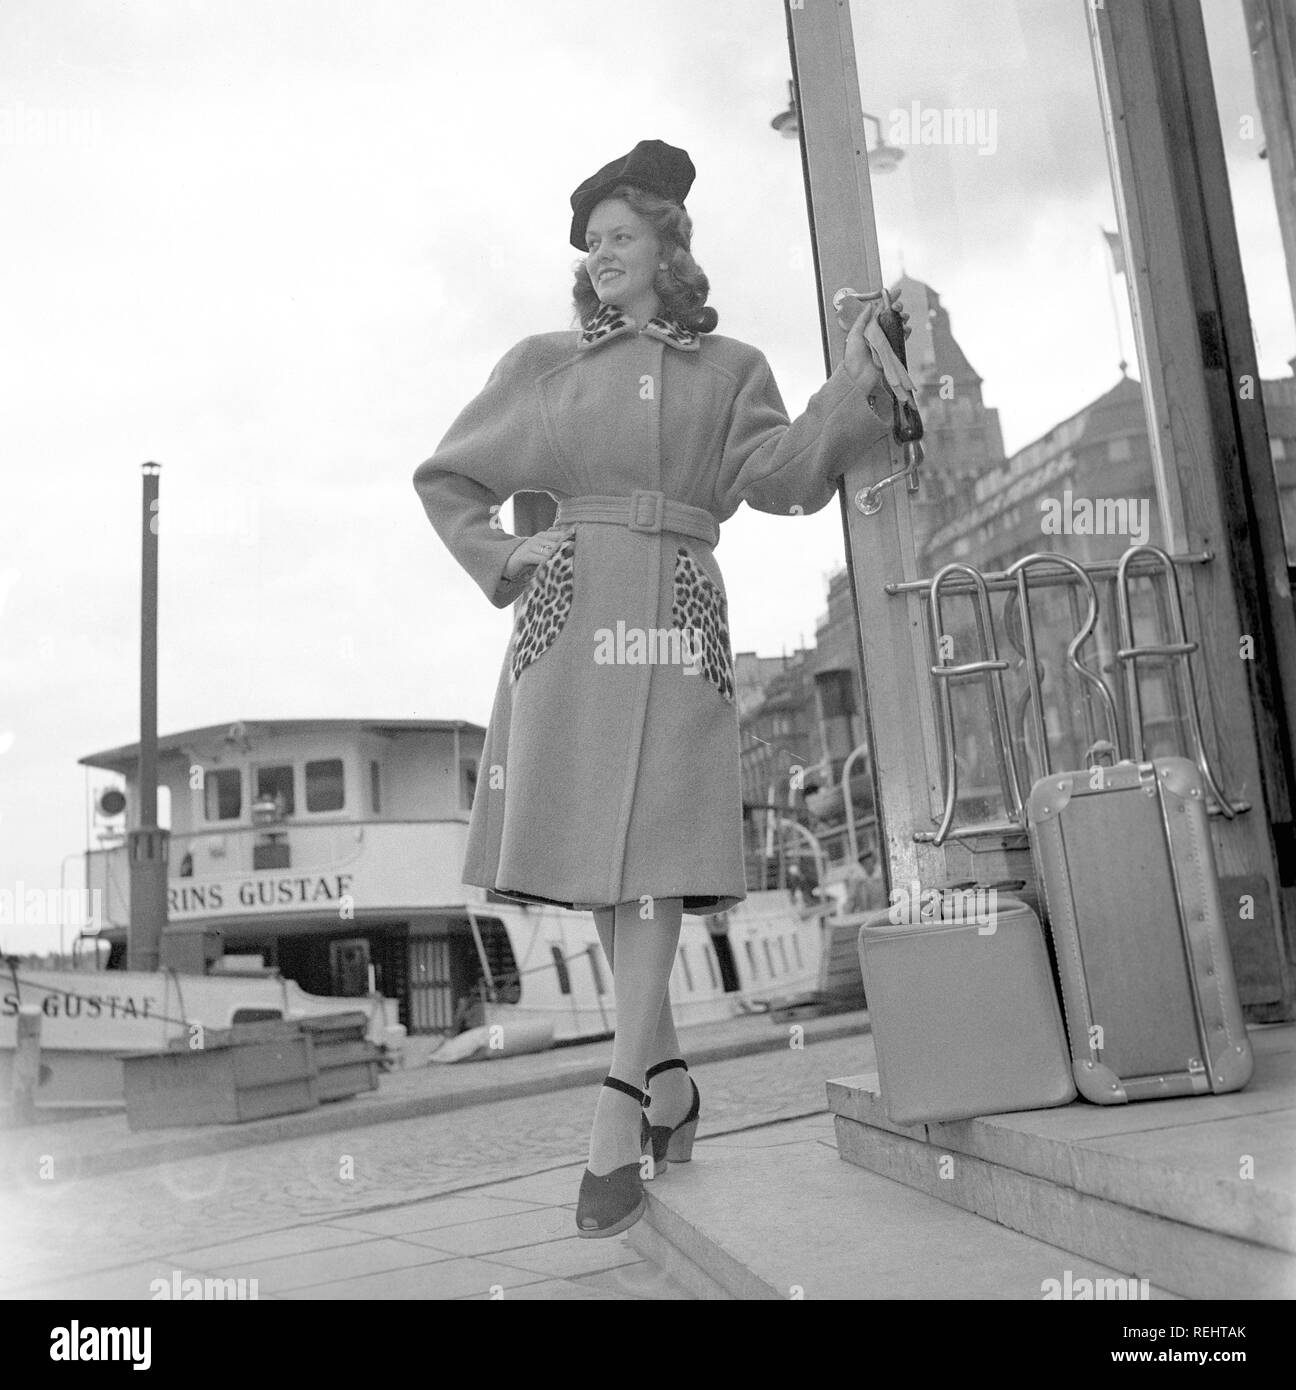 Damenmode in den 1940er Jahren. Eine junge Frau in einem typischen 1940er  Mantel mit Leopard gemusterten Details. Foto Kristoffersson Ref V 77-2.  Schweden 1947 Stockfotografie - Alamy